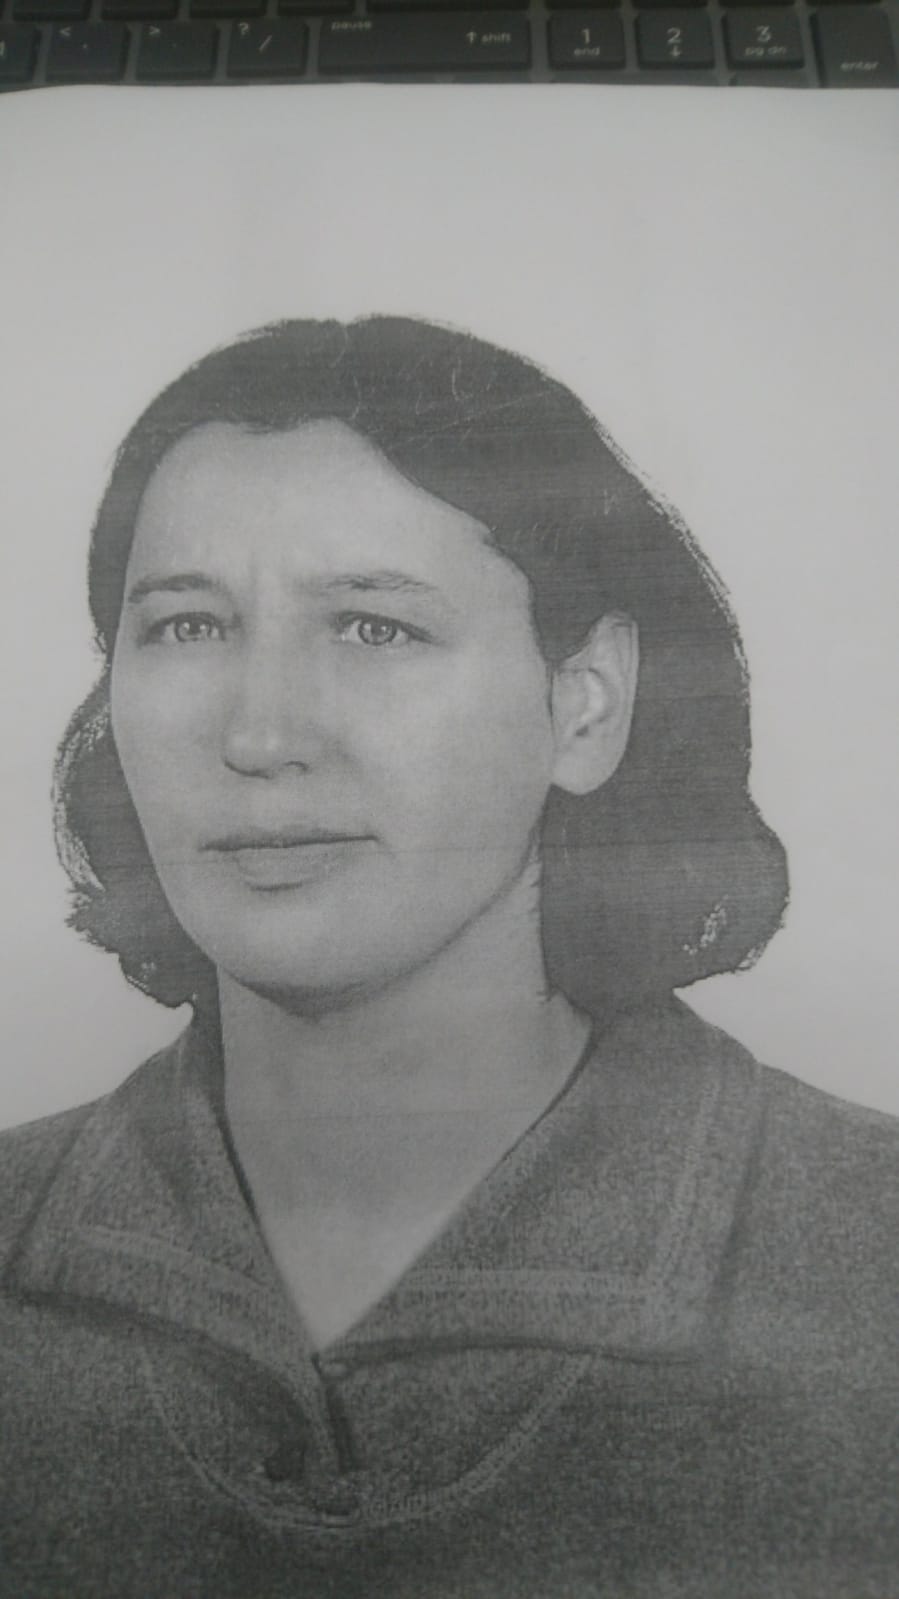 Olsztyn: Poszukujemy zaginionej 46-letniej kobiety